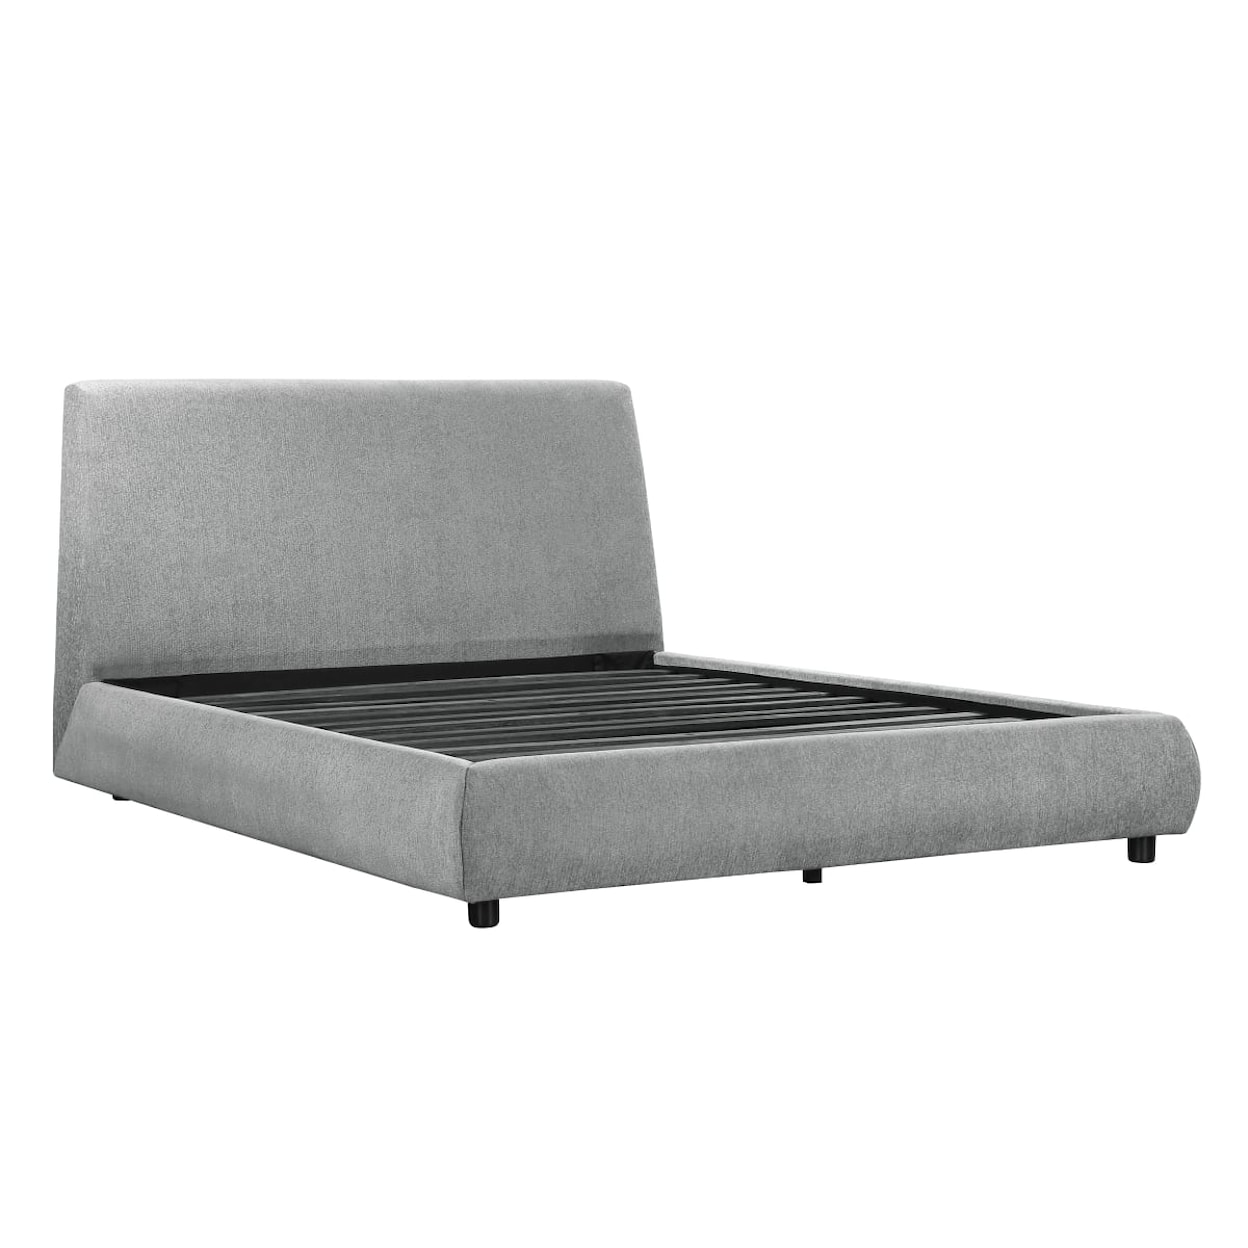 Homelegance Furniture Alford Full Platform Bed